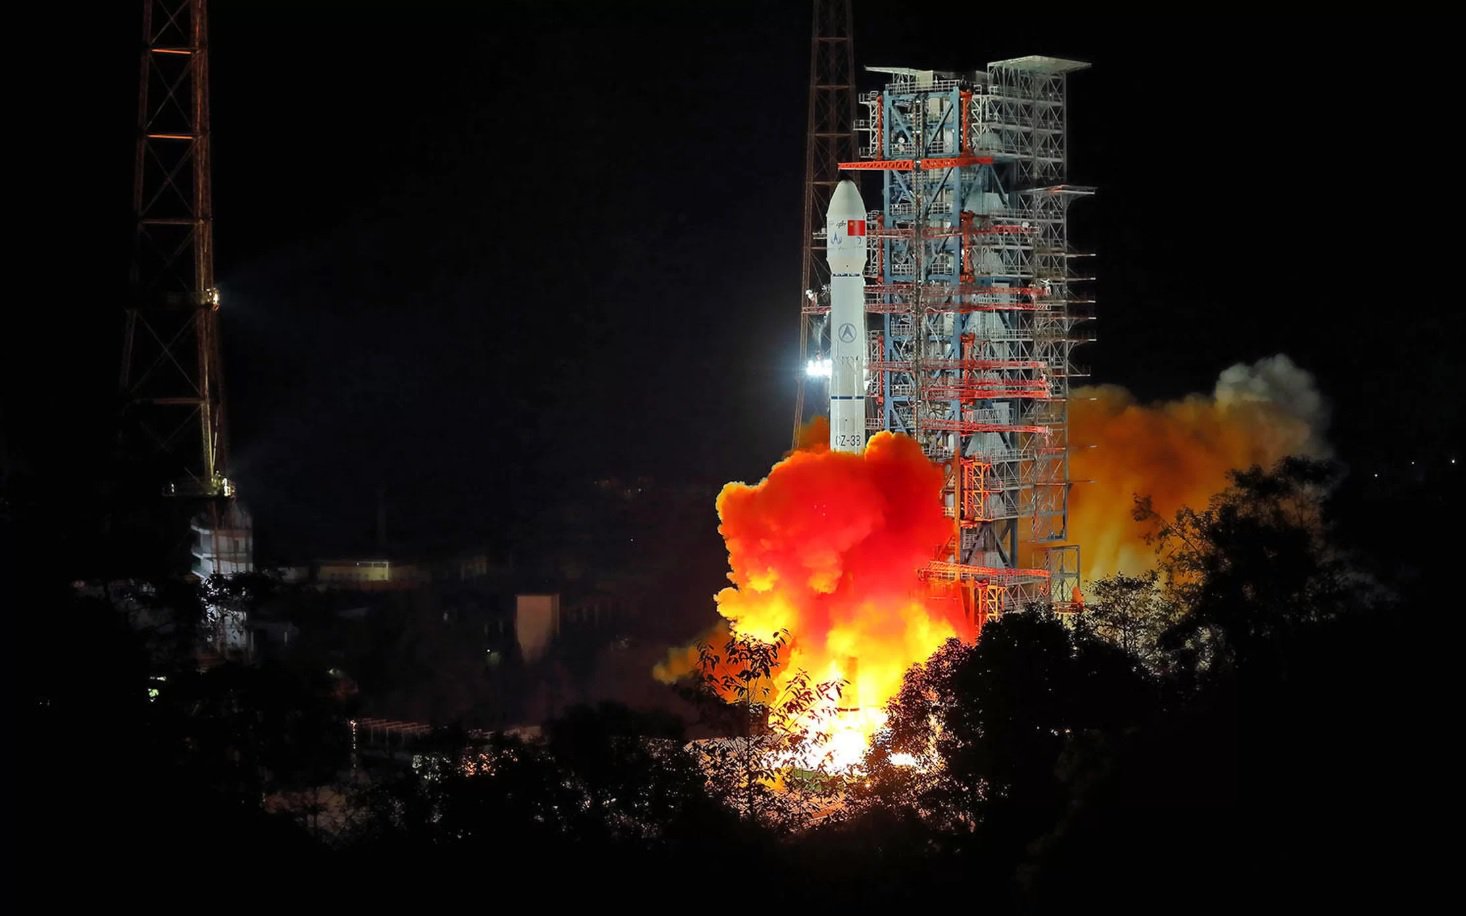 Китай отправил луноход на обратную сторону Луны